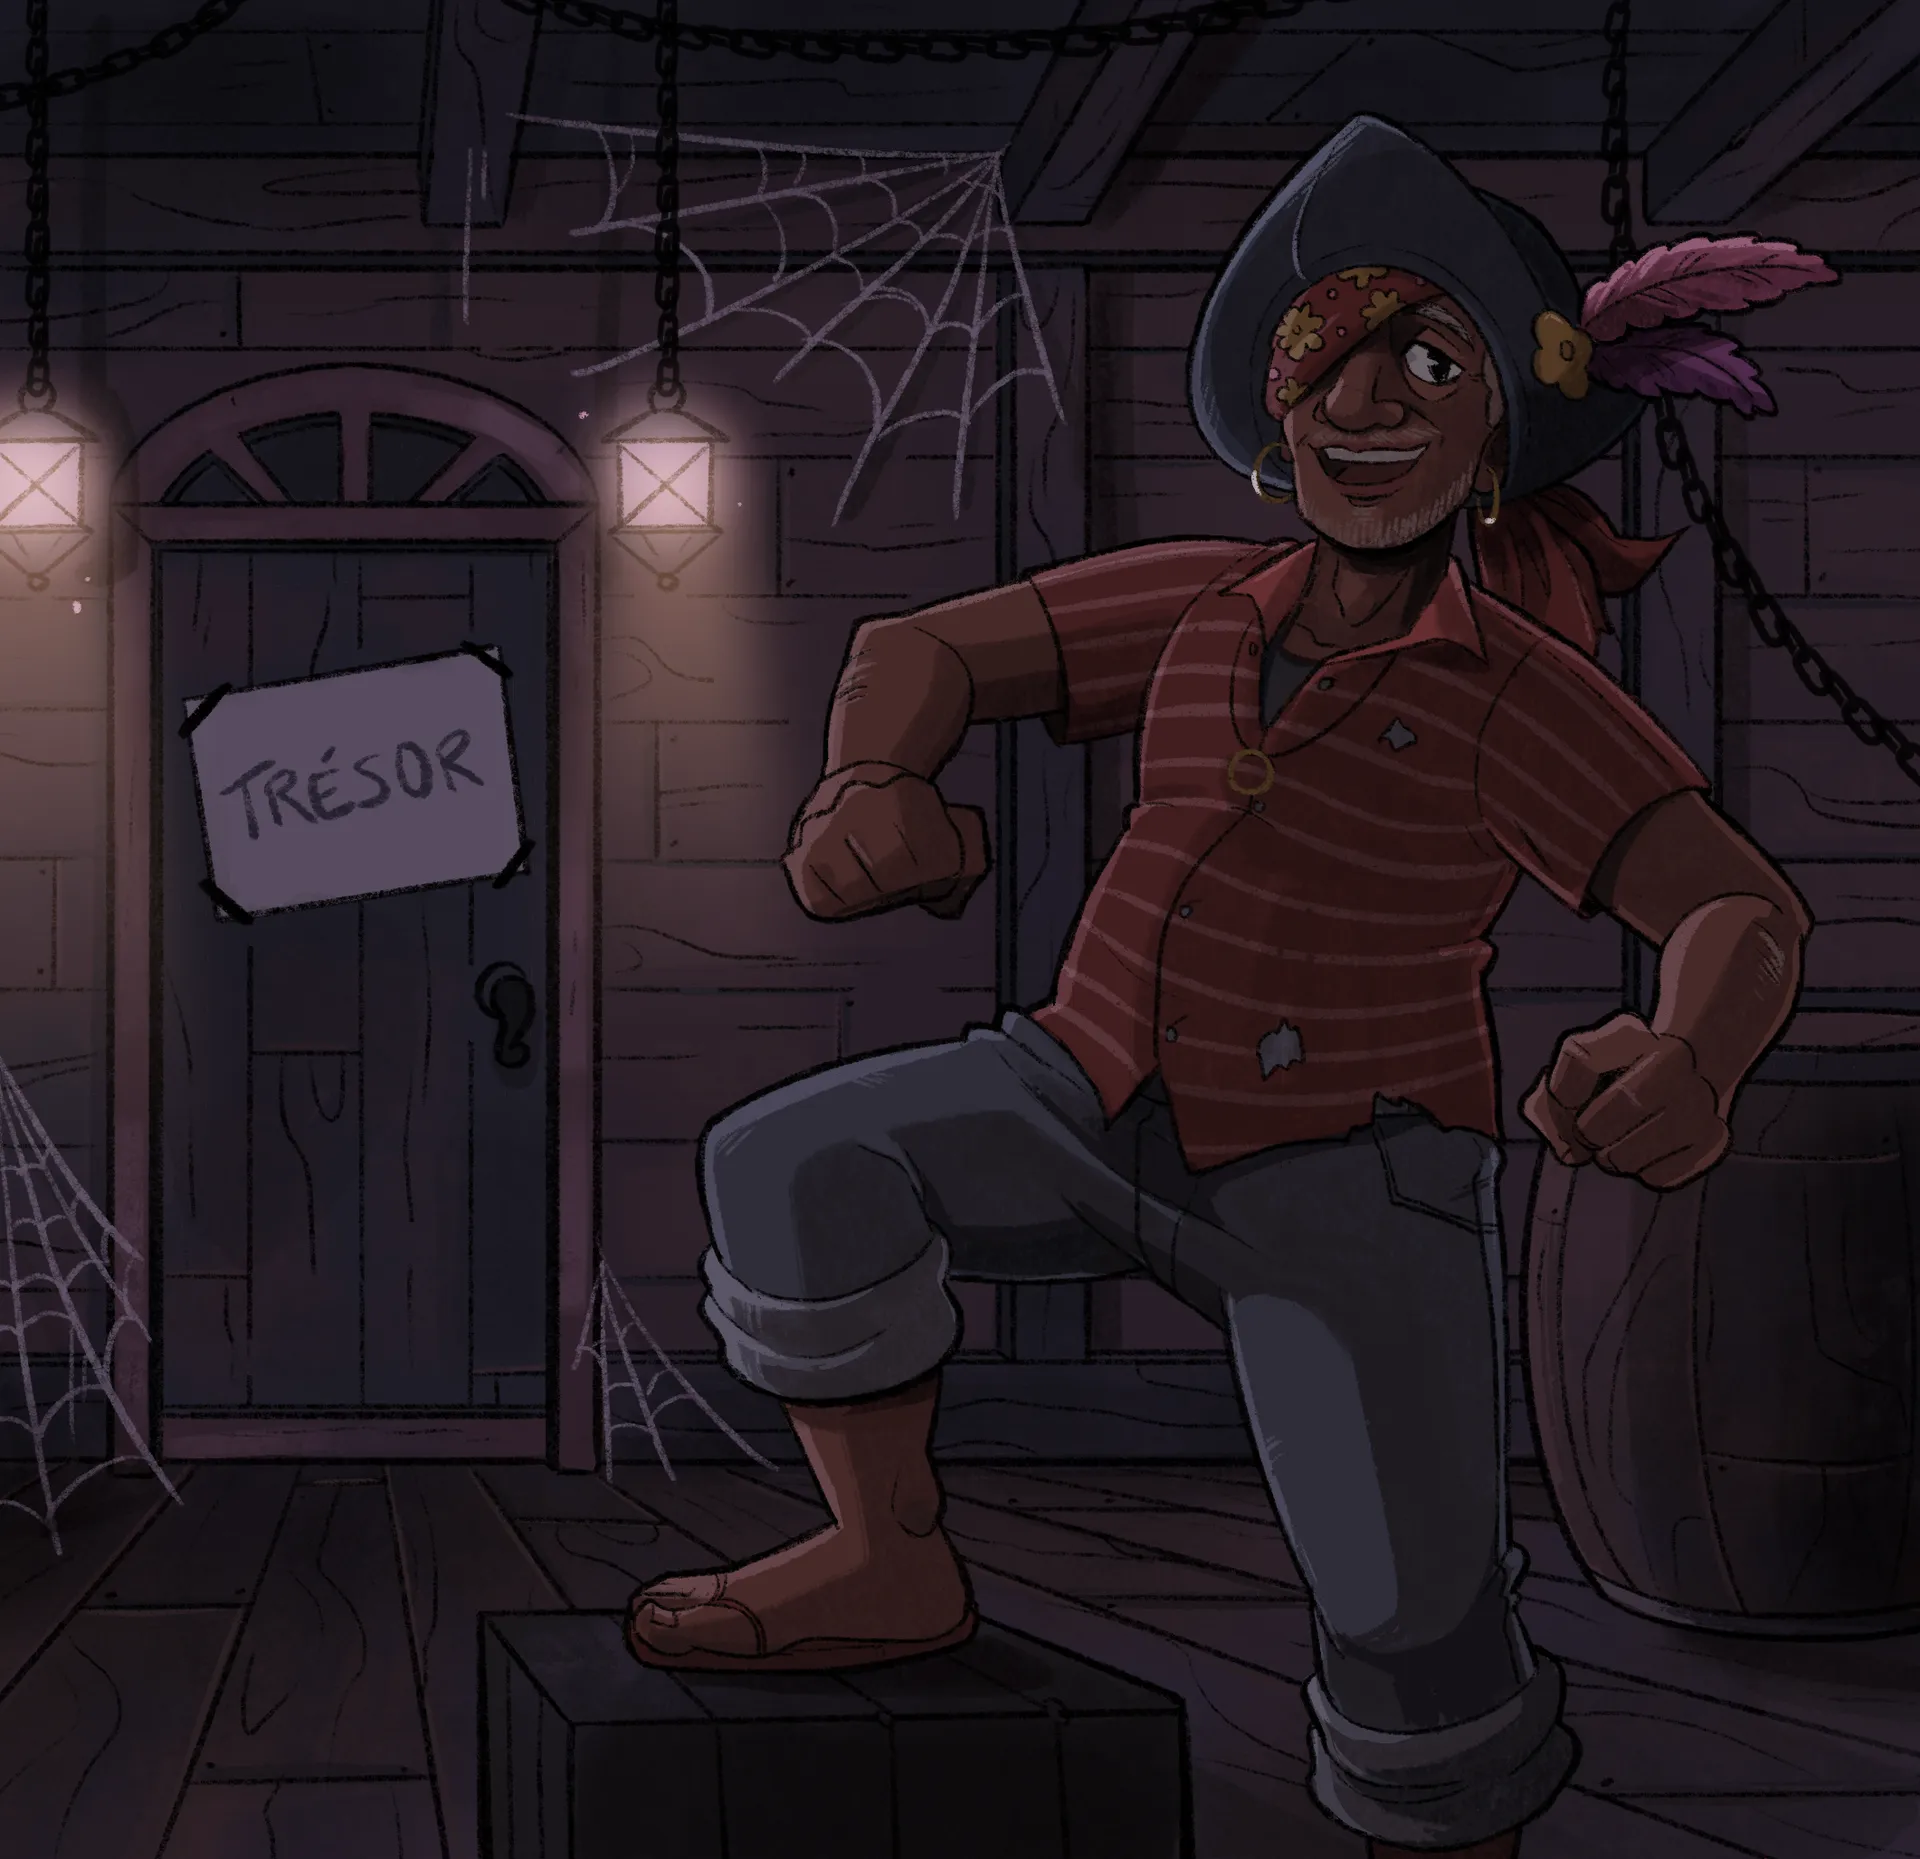 Dans une pièce sombre avec des toiles d’araignée, un pirate souriant se tient sur une boite en bois. En arrière-plan, on peut voir une porte portant l’inscription « Trésor ».